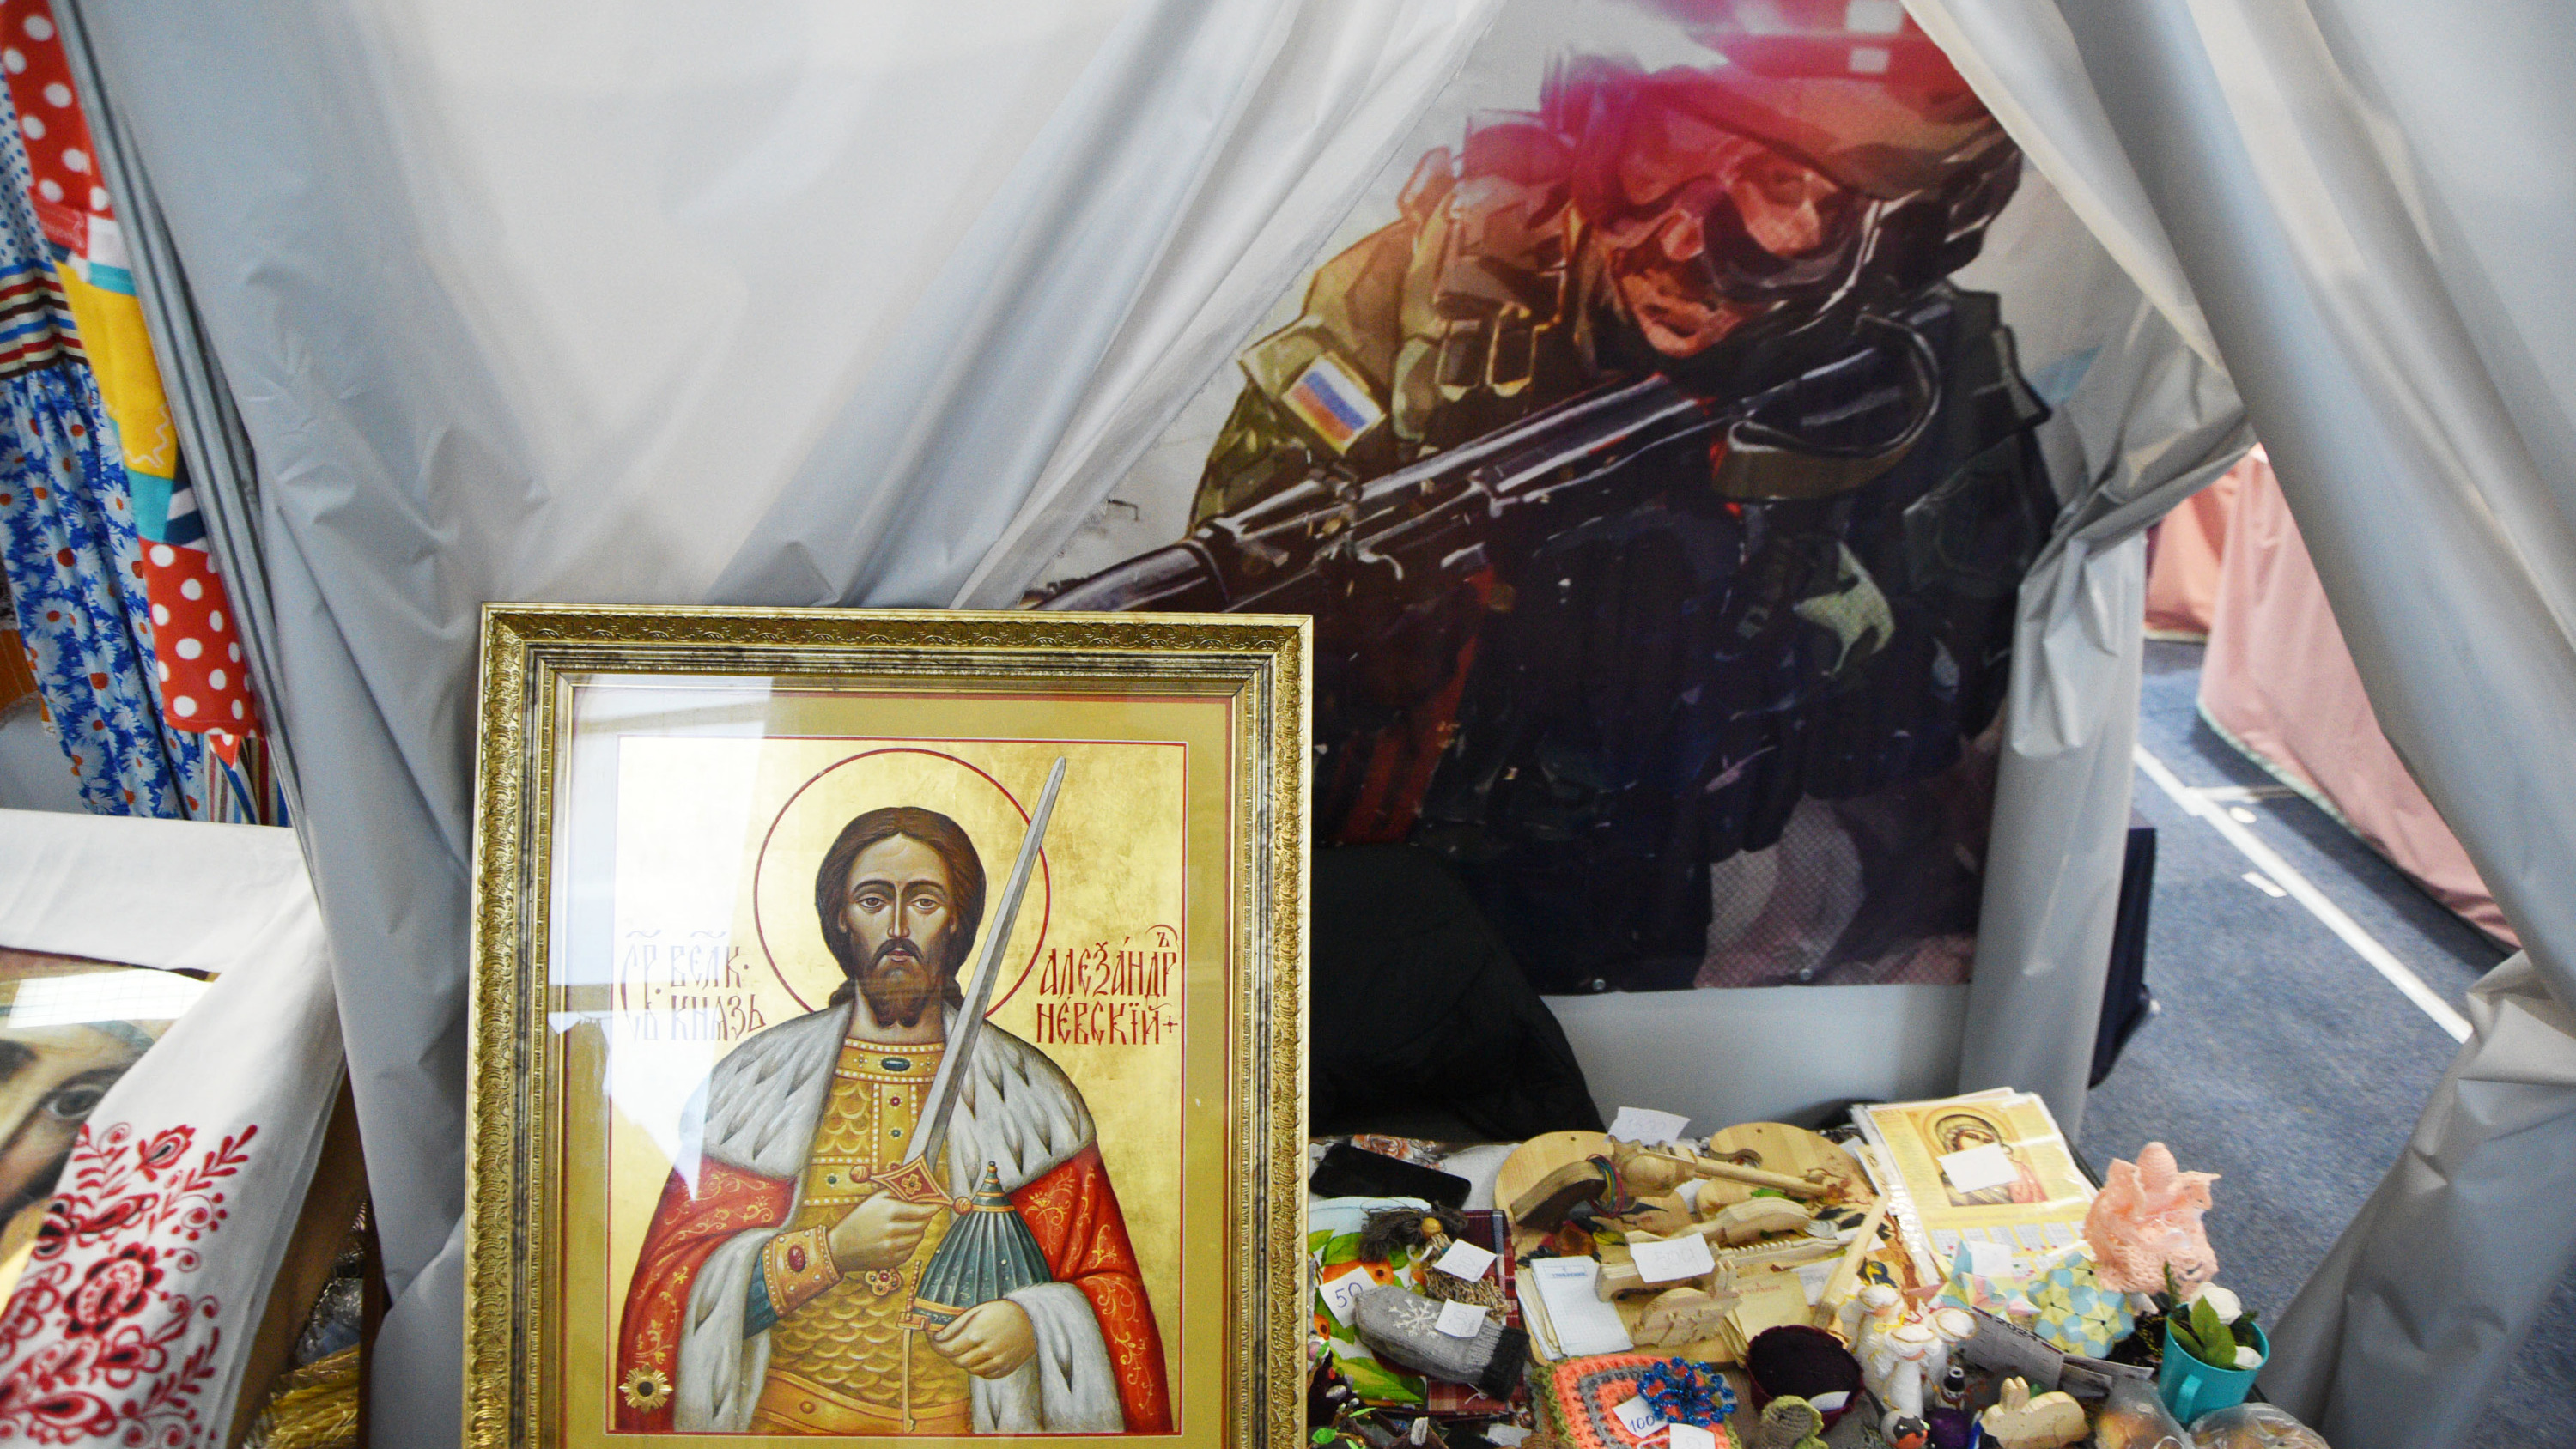 Иконы, белые грибы и мазь от грибка: что еще предлагают на православной ярмарке в Кургане